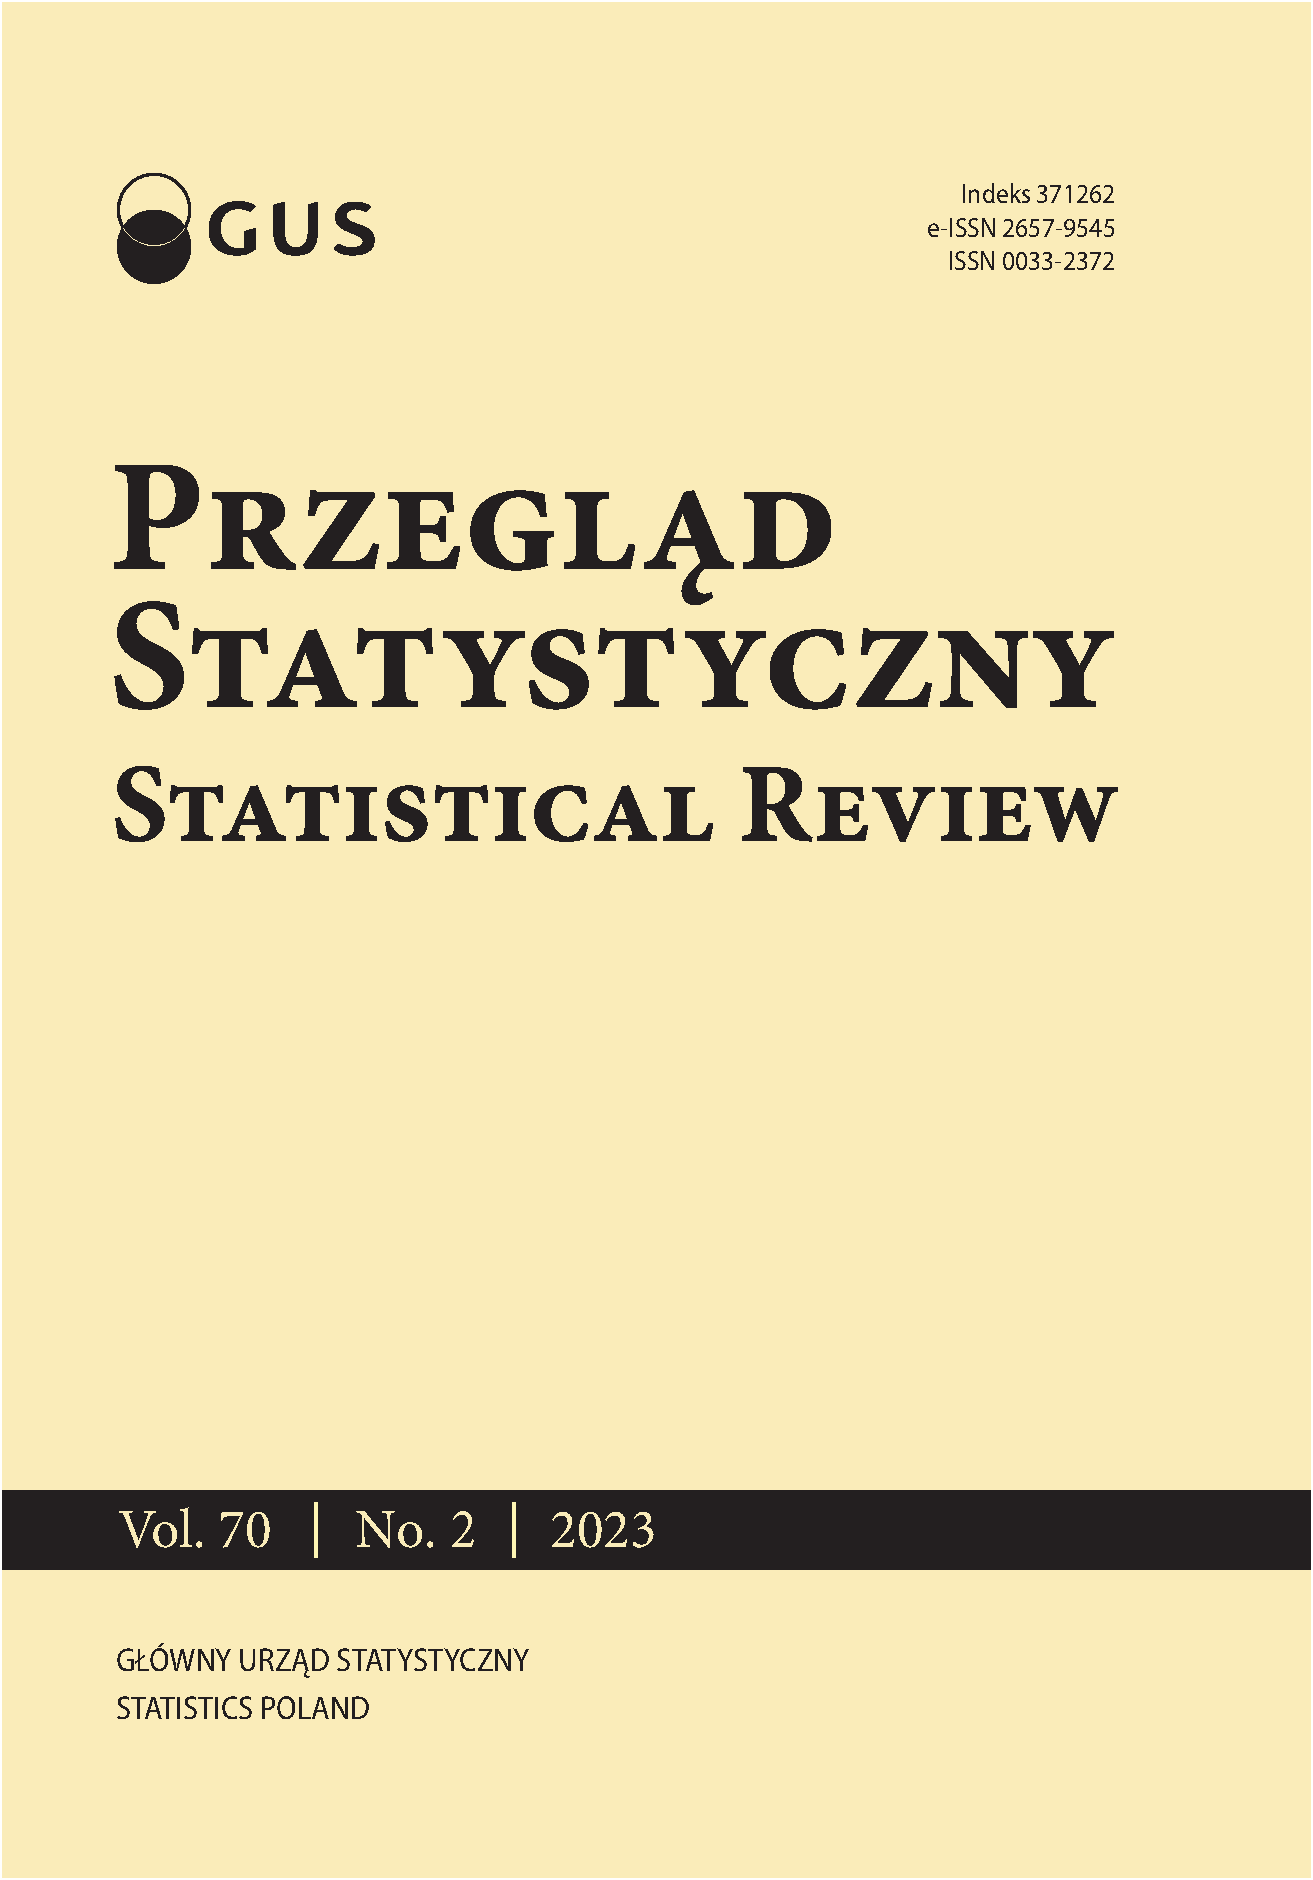 Professor Czesław Domański – 55 years devoted to statistics